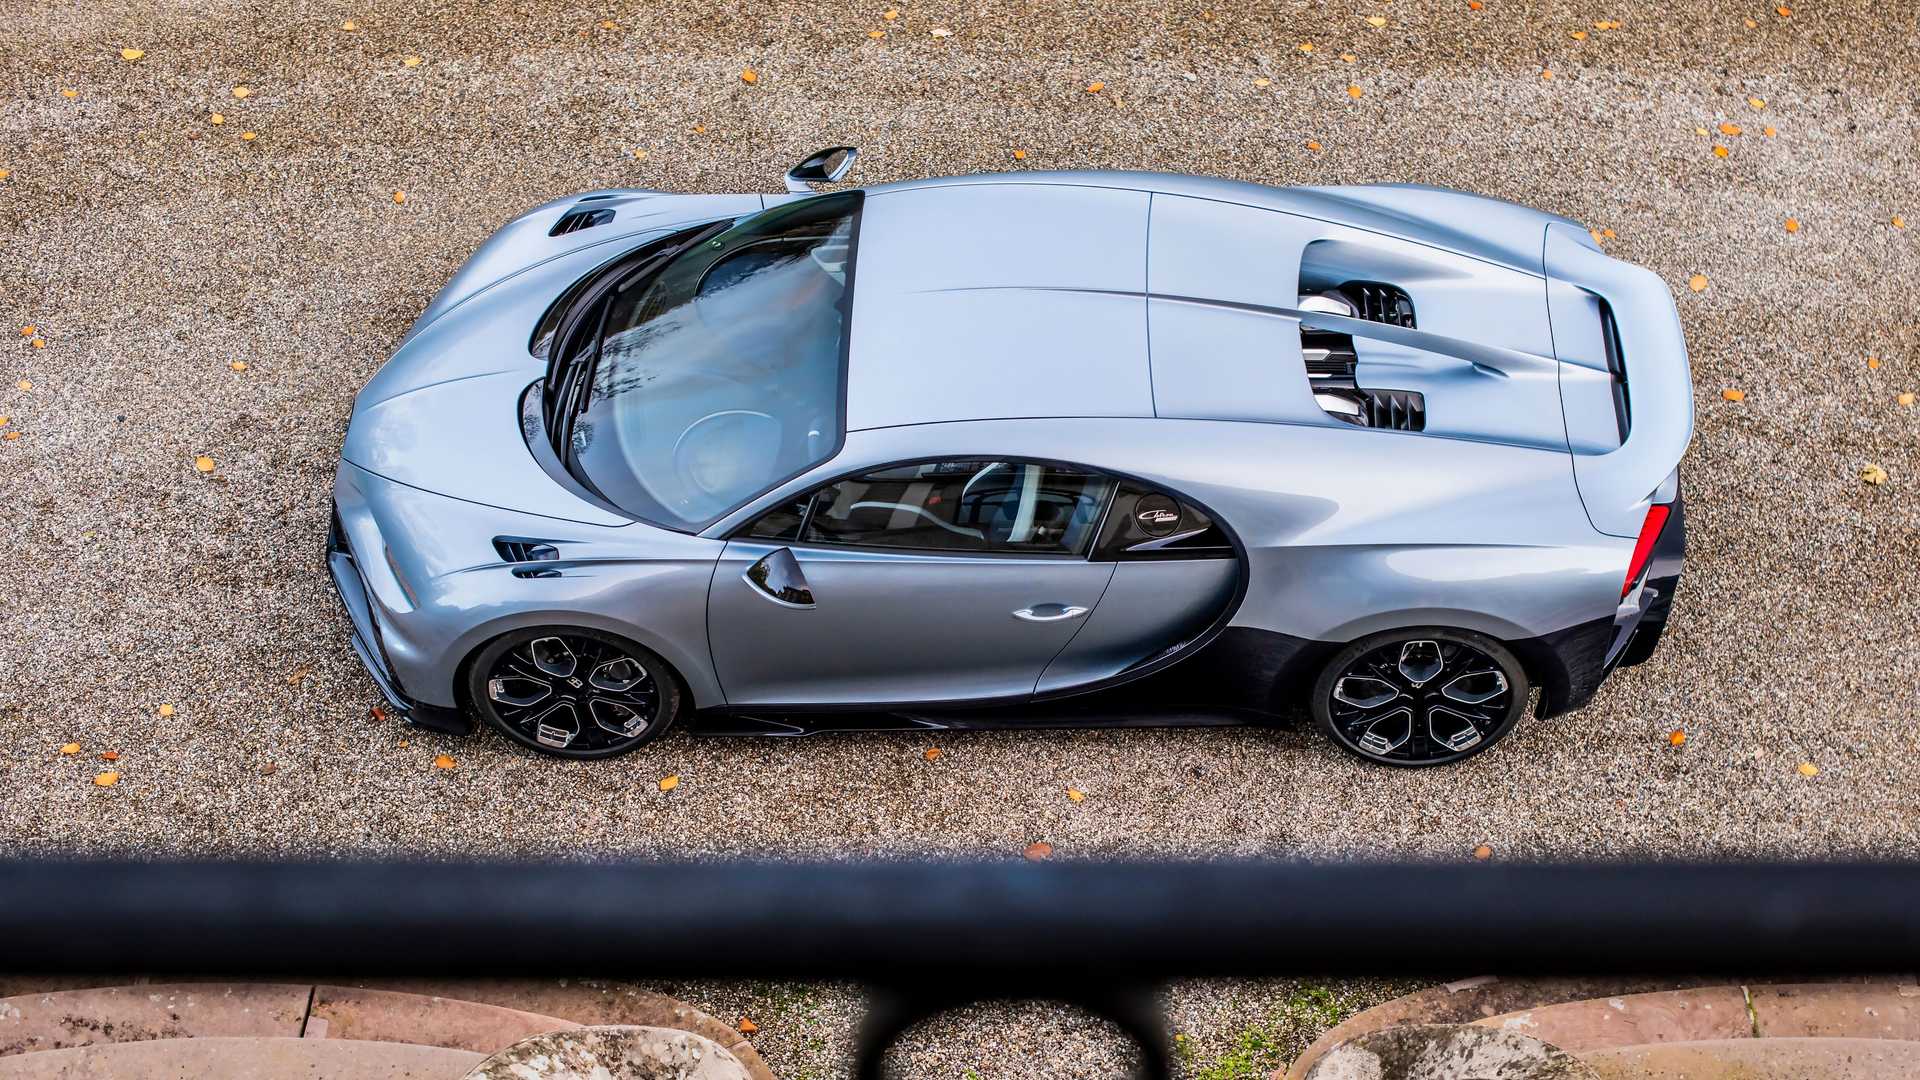 Vì sao Bugatti nói chỉ làm 500 chiếc Chiron nhưng lại có chiếc thứ 501? - Ảnh 7.